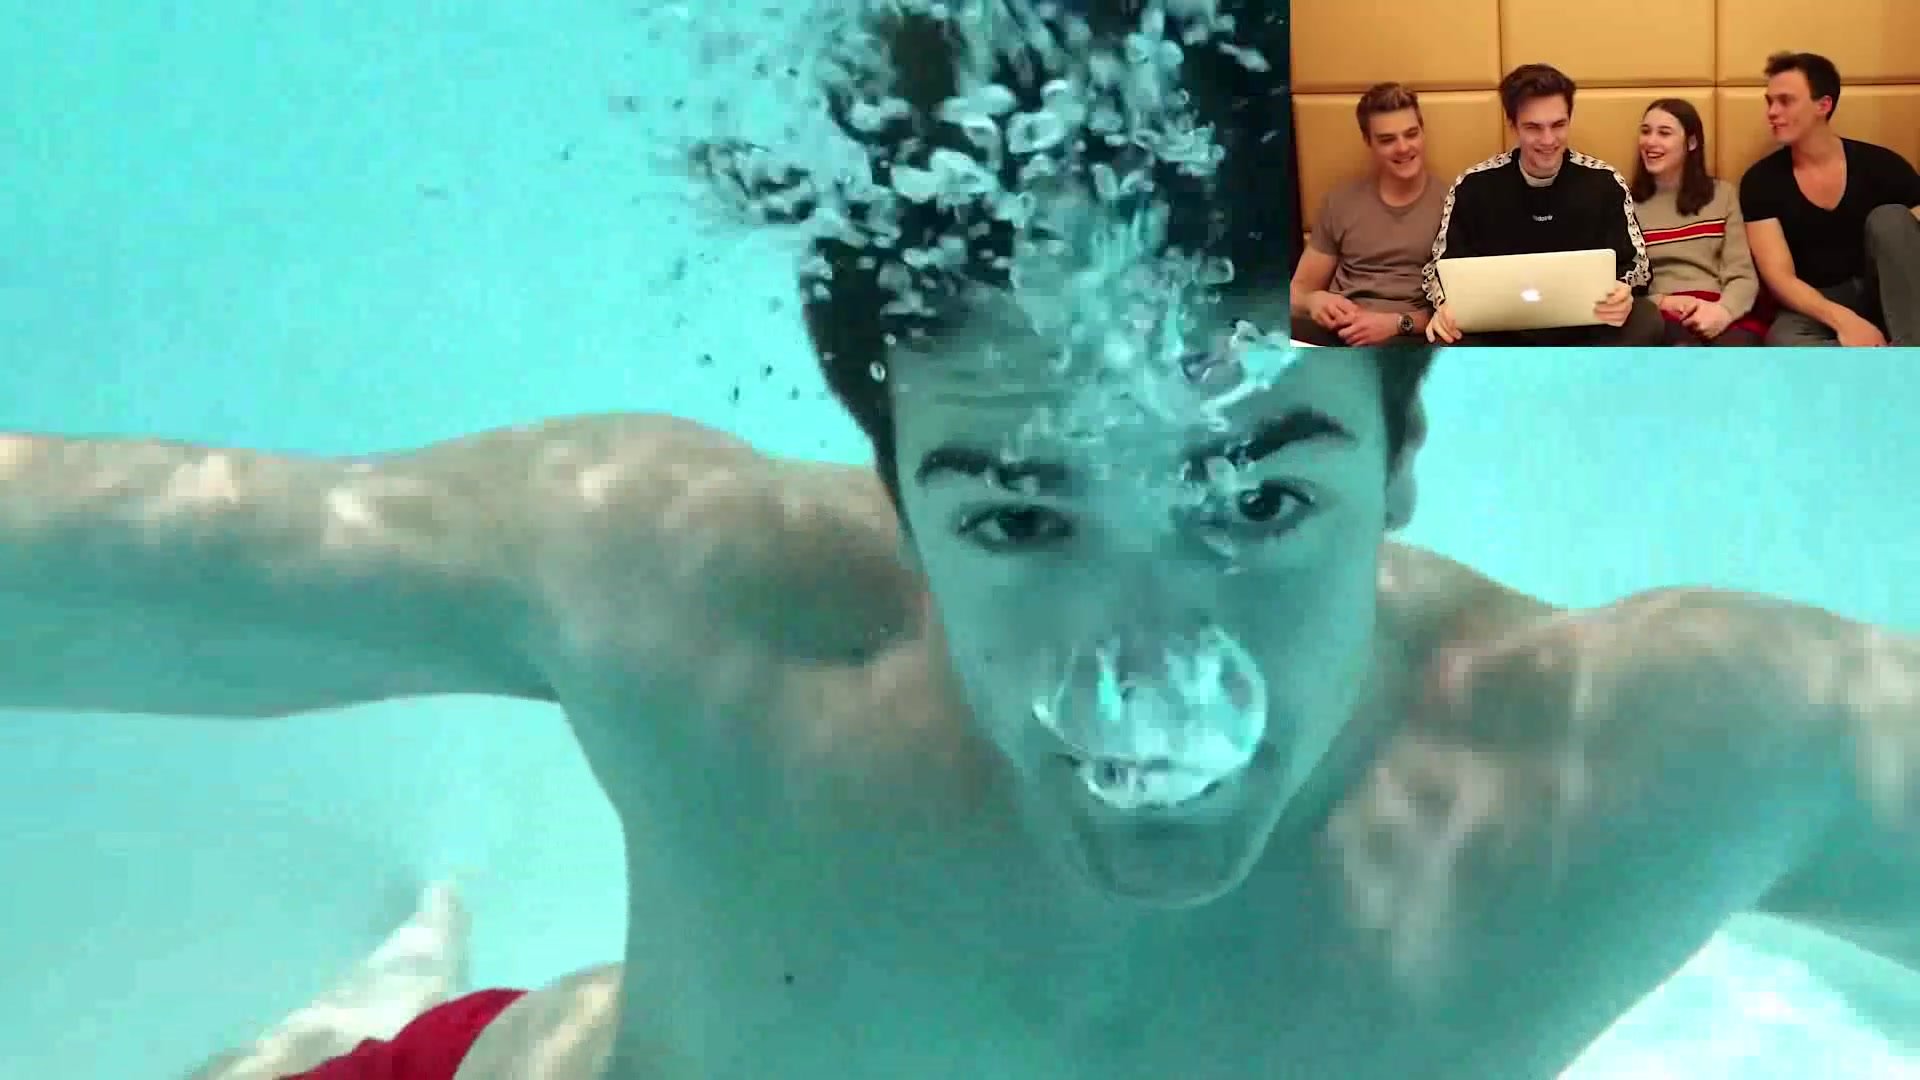 Barefaced german guy singing underwater in pool